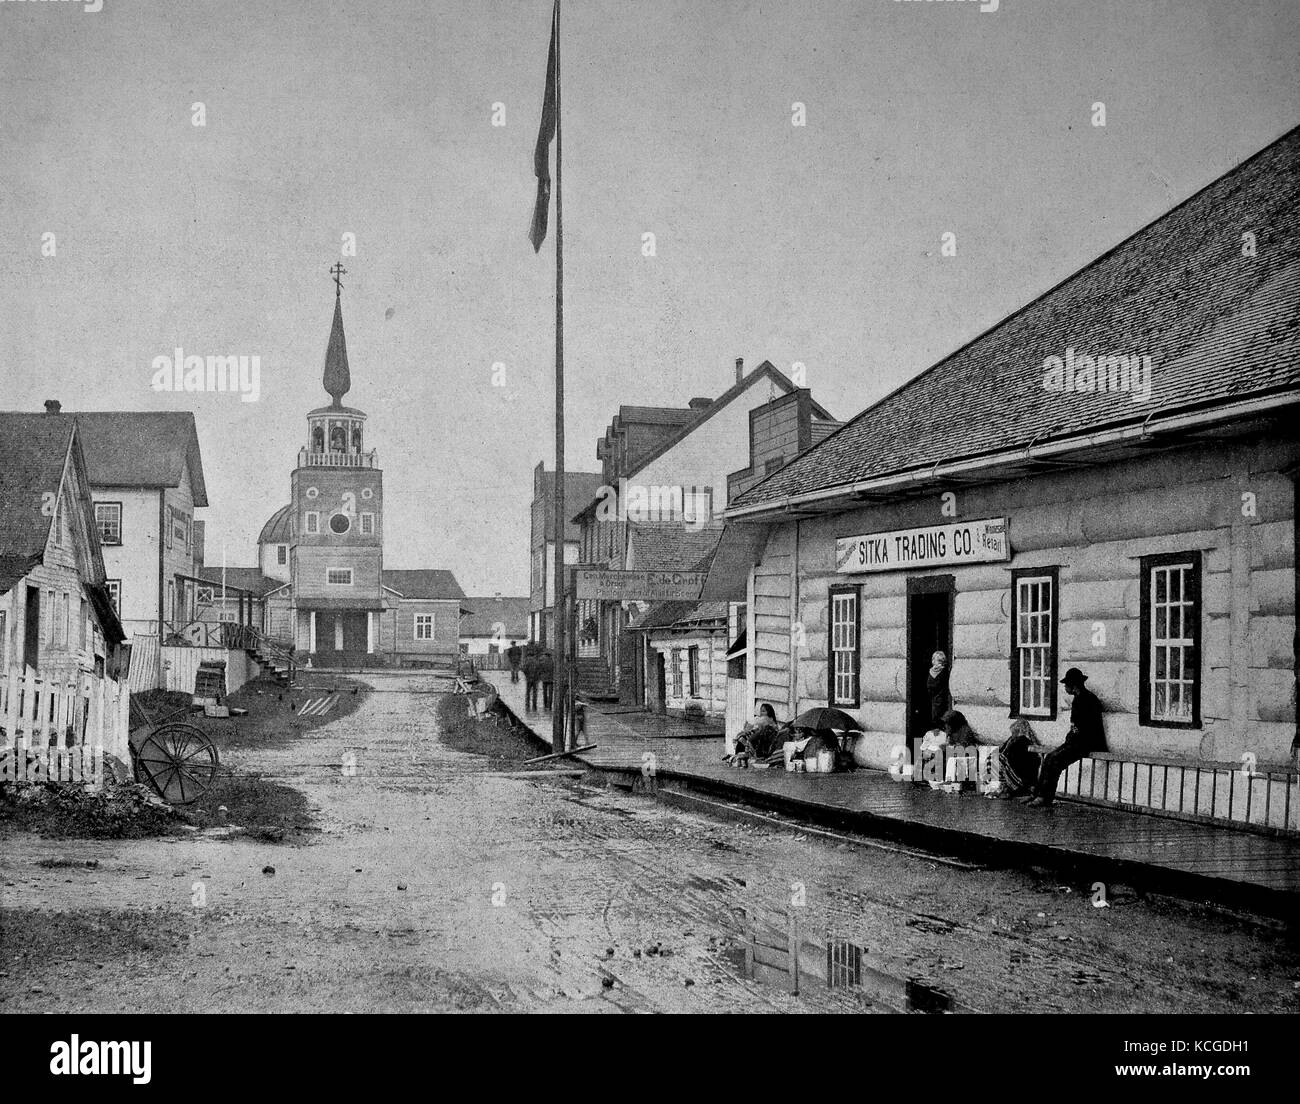 États-unis d'Amérique, scène de rue dans le centre de la ville de Sitka, un jour de pluie, les gens assis en face d'un magasin et l'église à la fin de rue, l'Alaska, l'amélioration numérique reproduction d'une photo historique de l'année 1899 (estimé) Banque D'Images